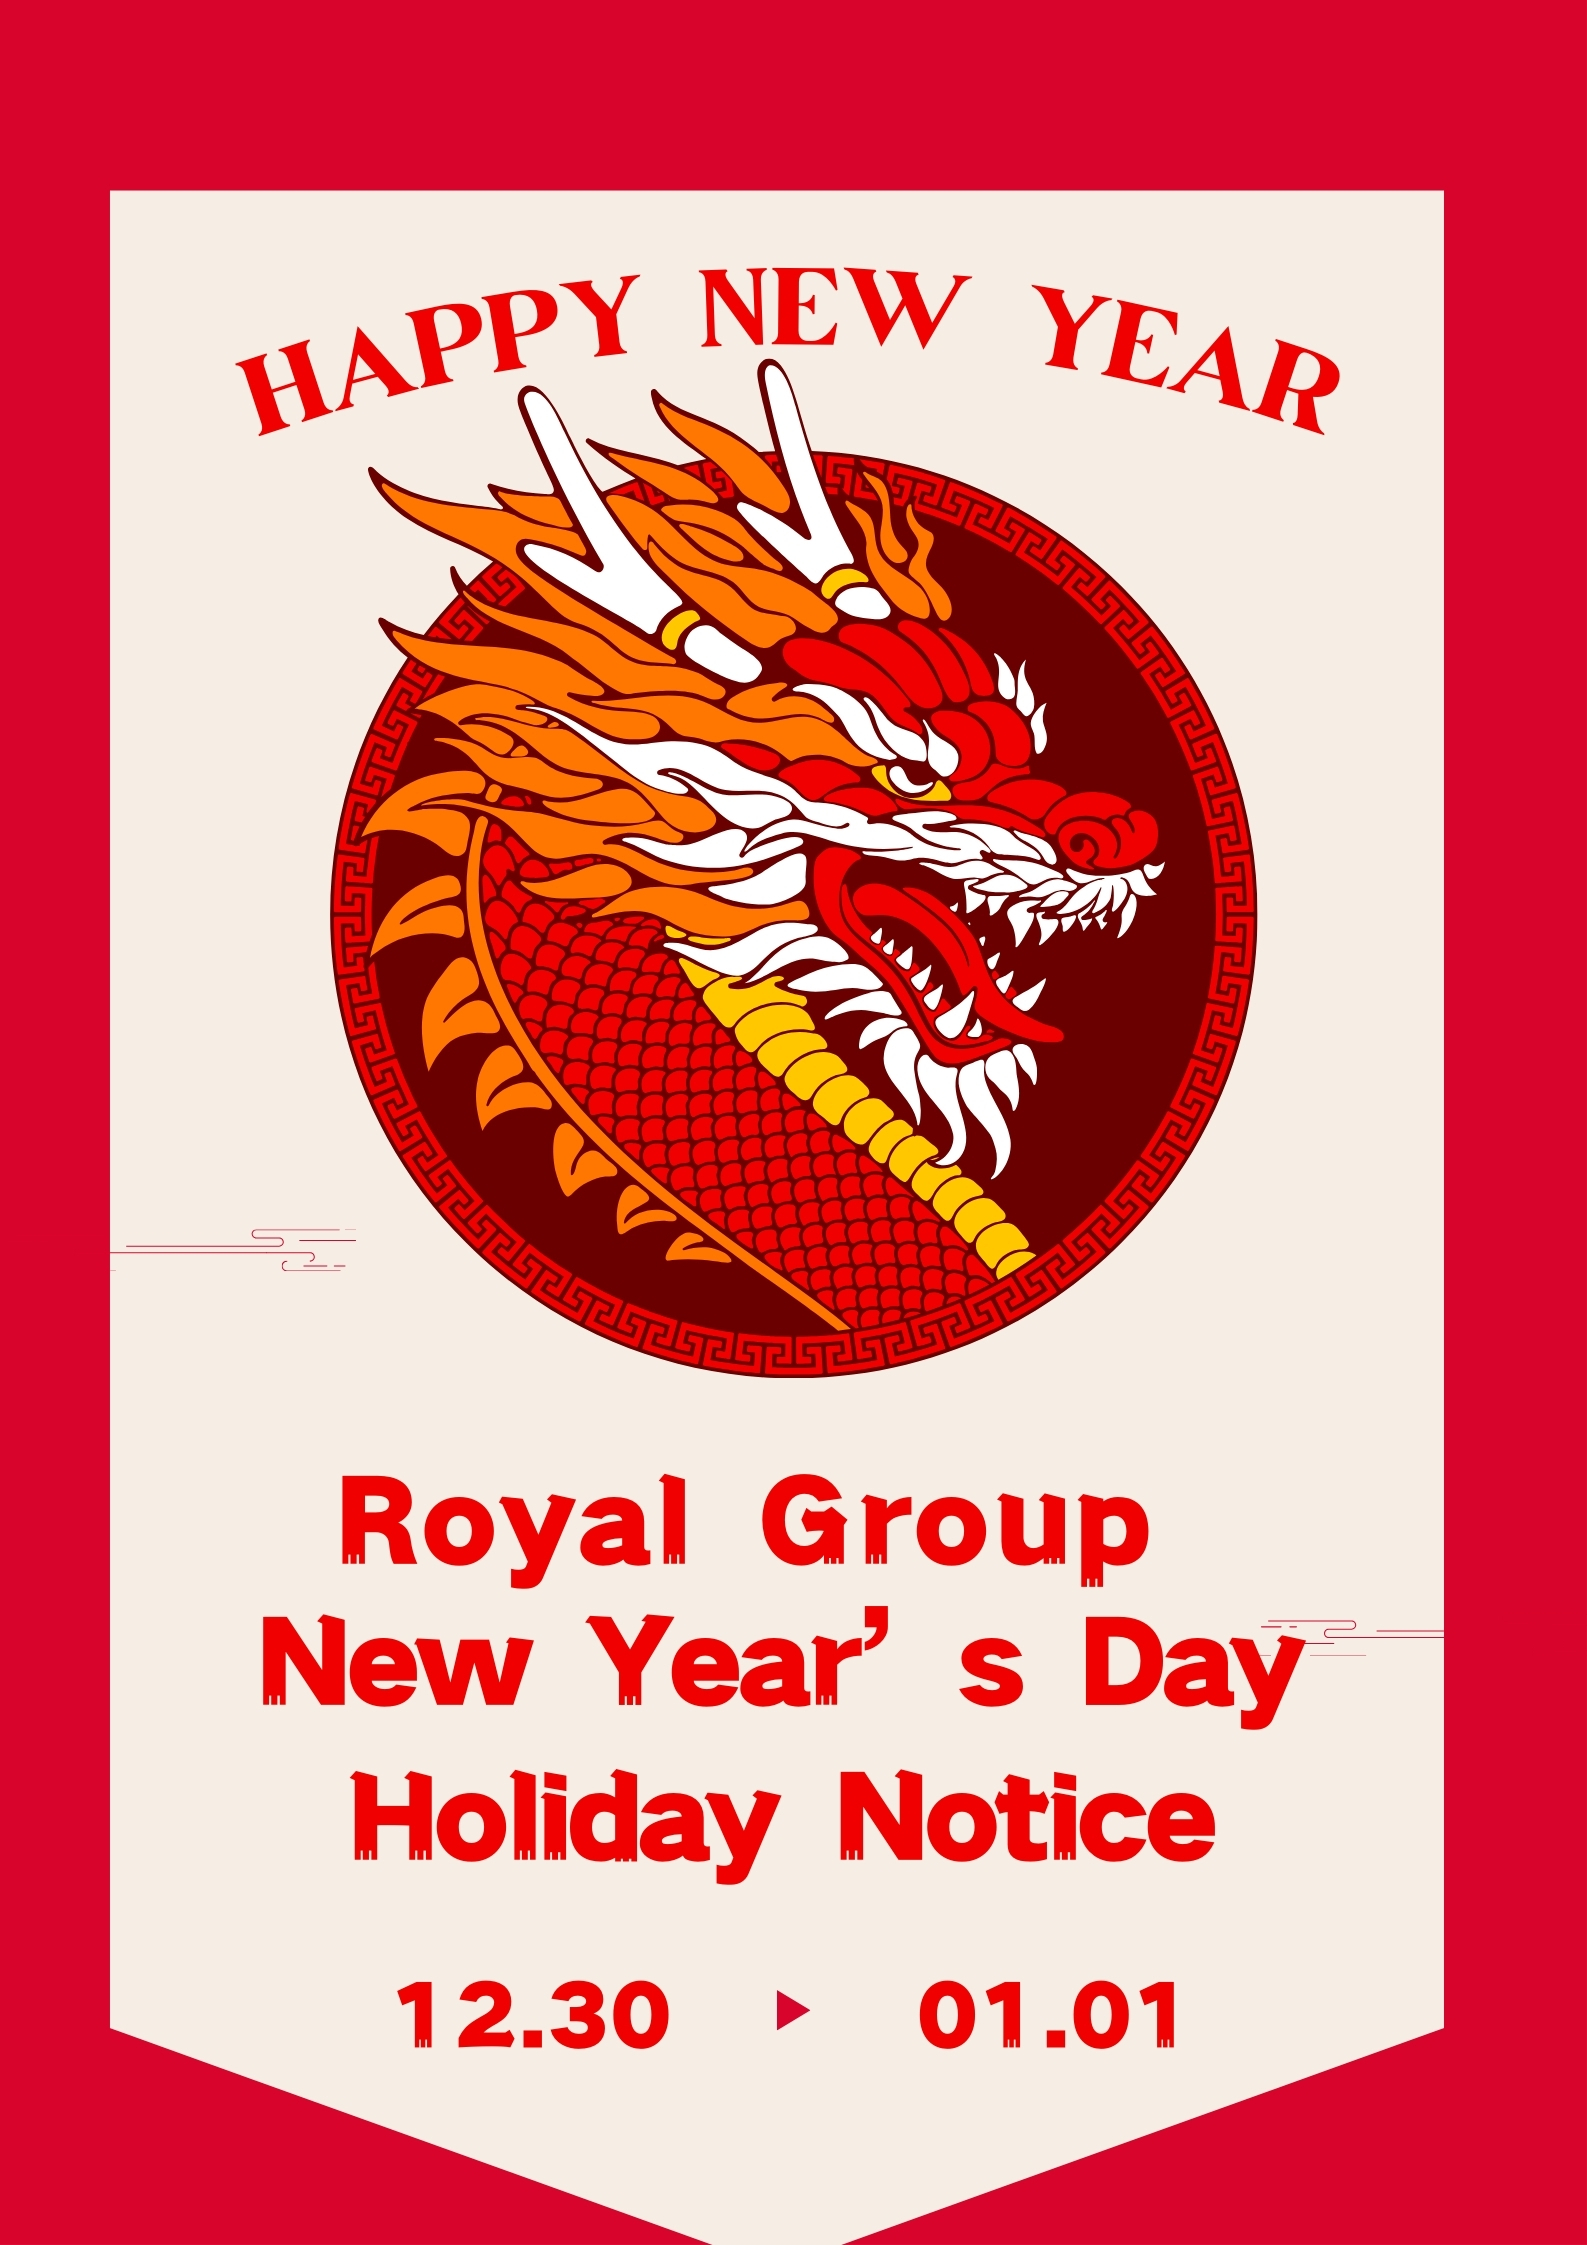 Obavijest o novogodišnjim praznicima Royal Group